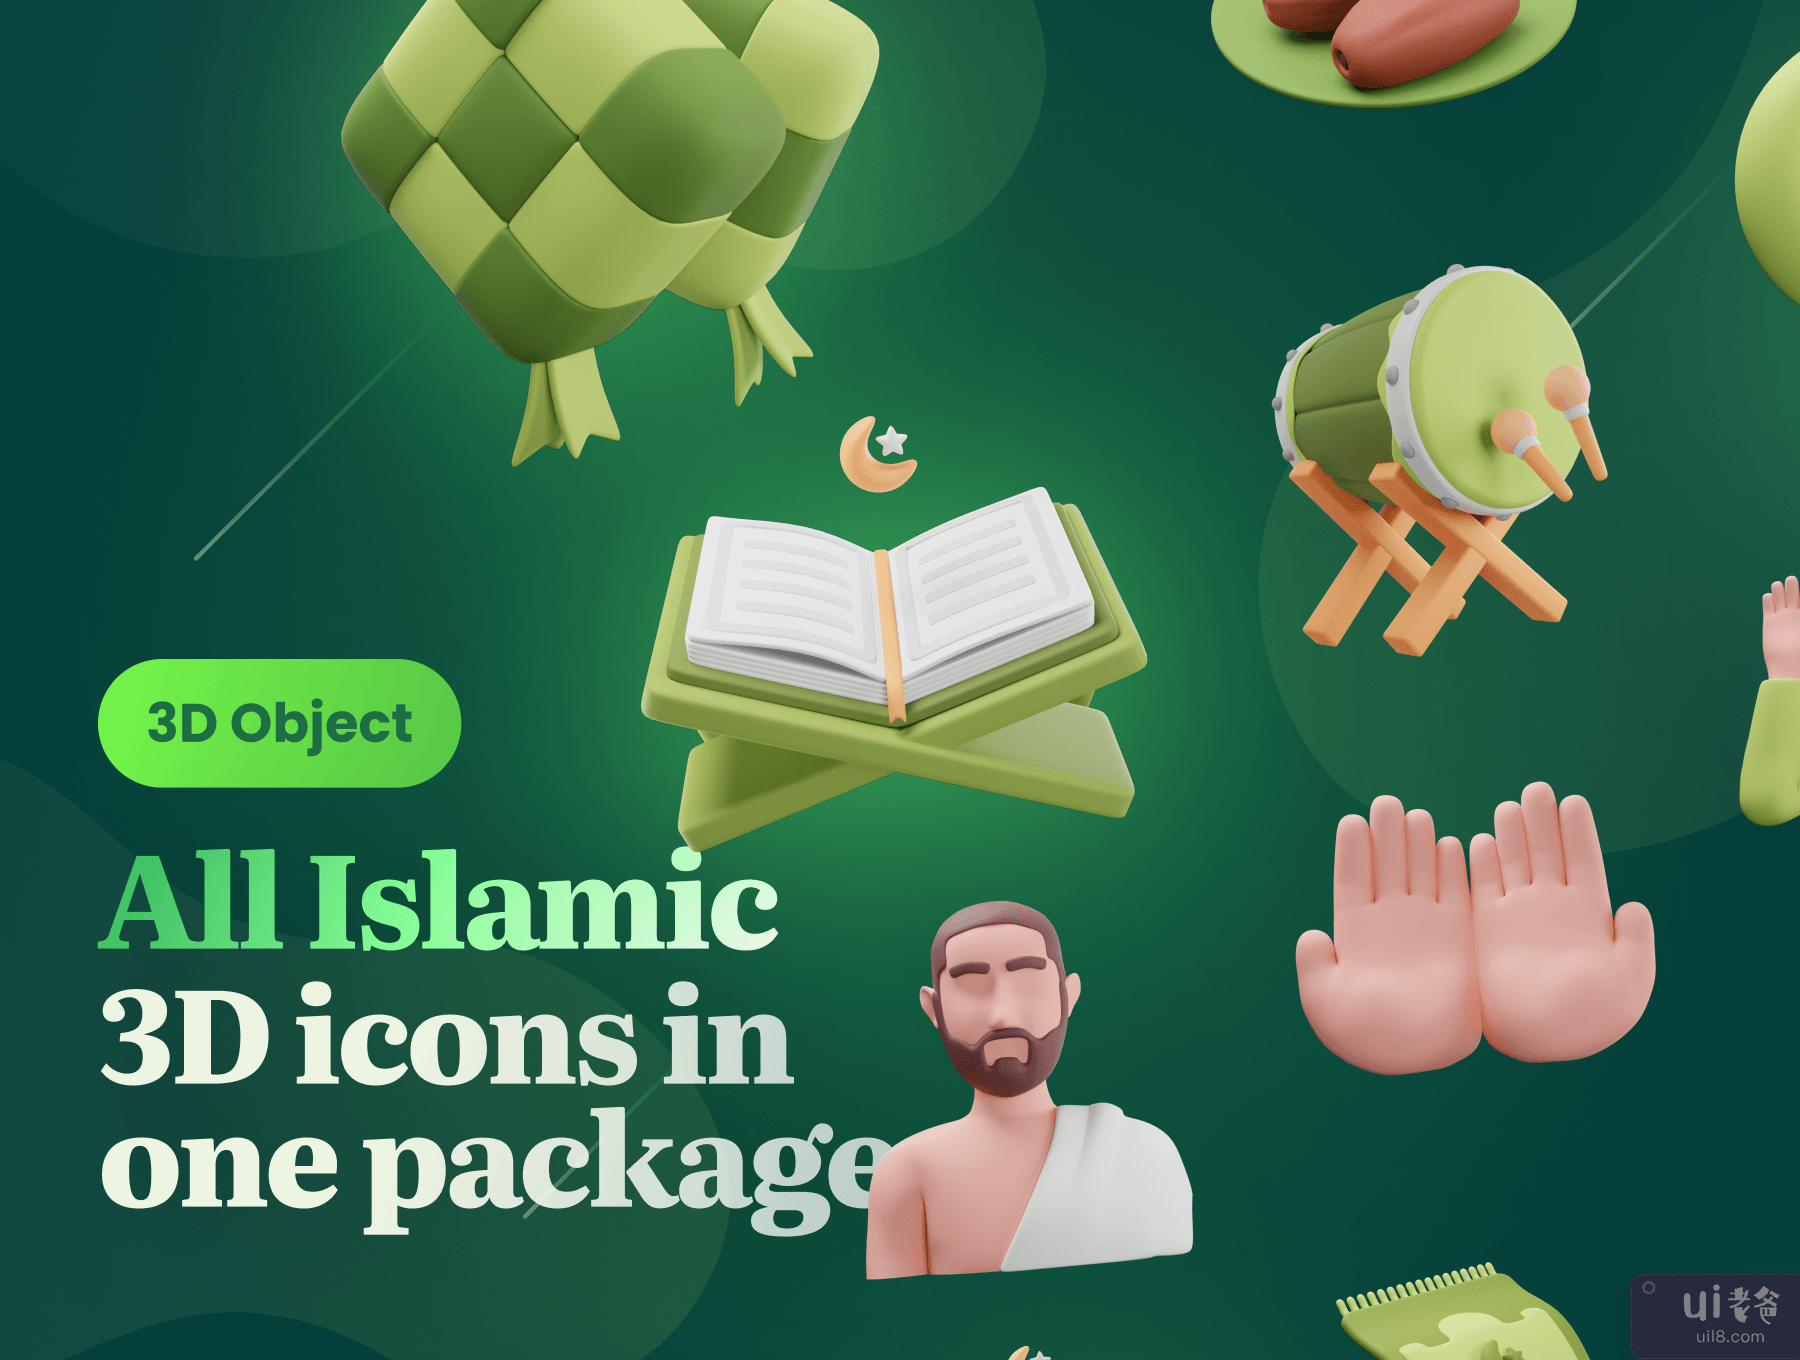 Islamy - 伊斯兰教和斋月 3D 图标集 (Islamy - Islamic & Ramadan 3D Icon Set)插图1